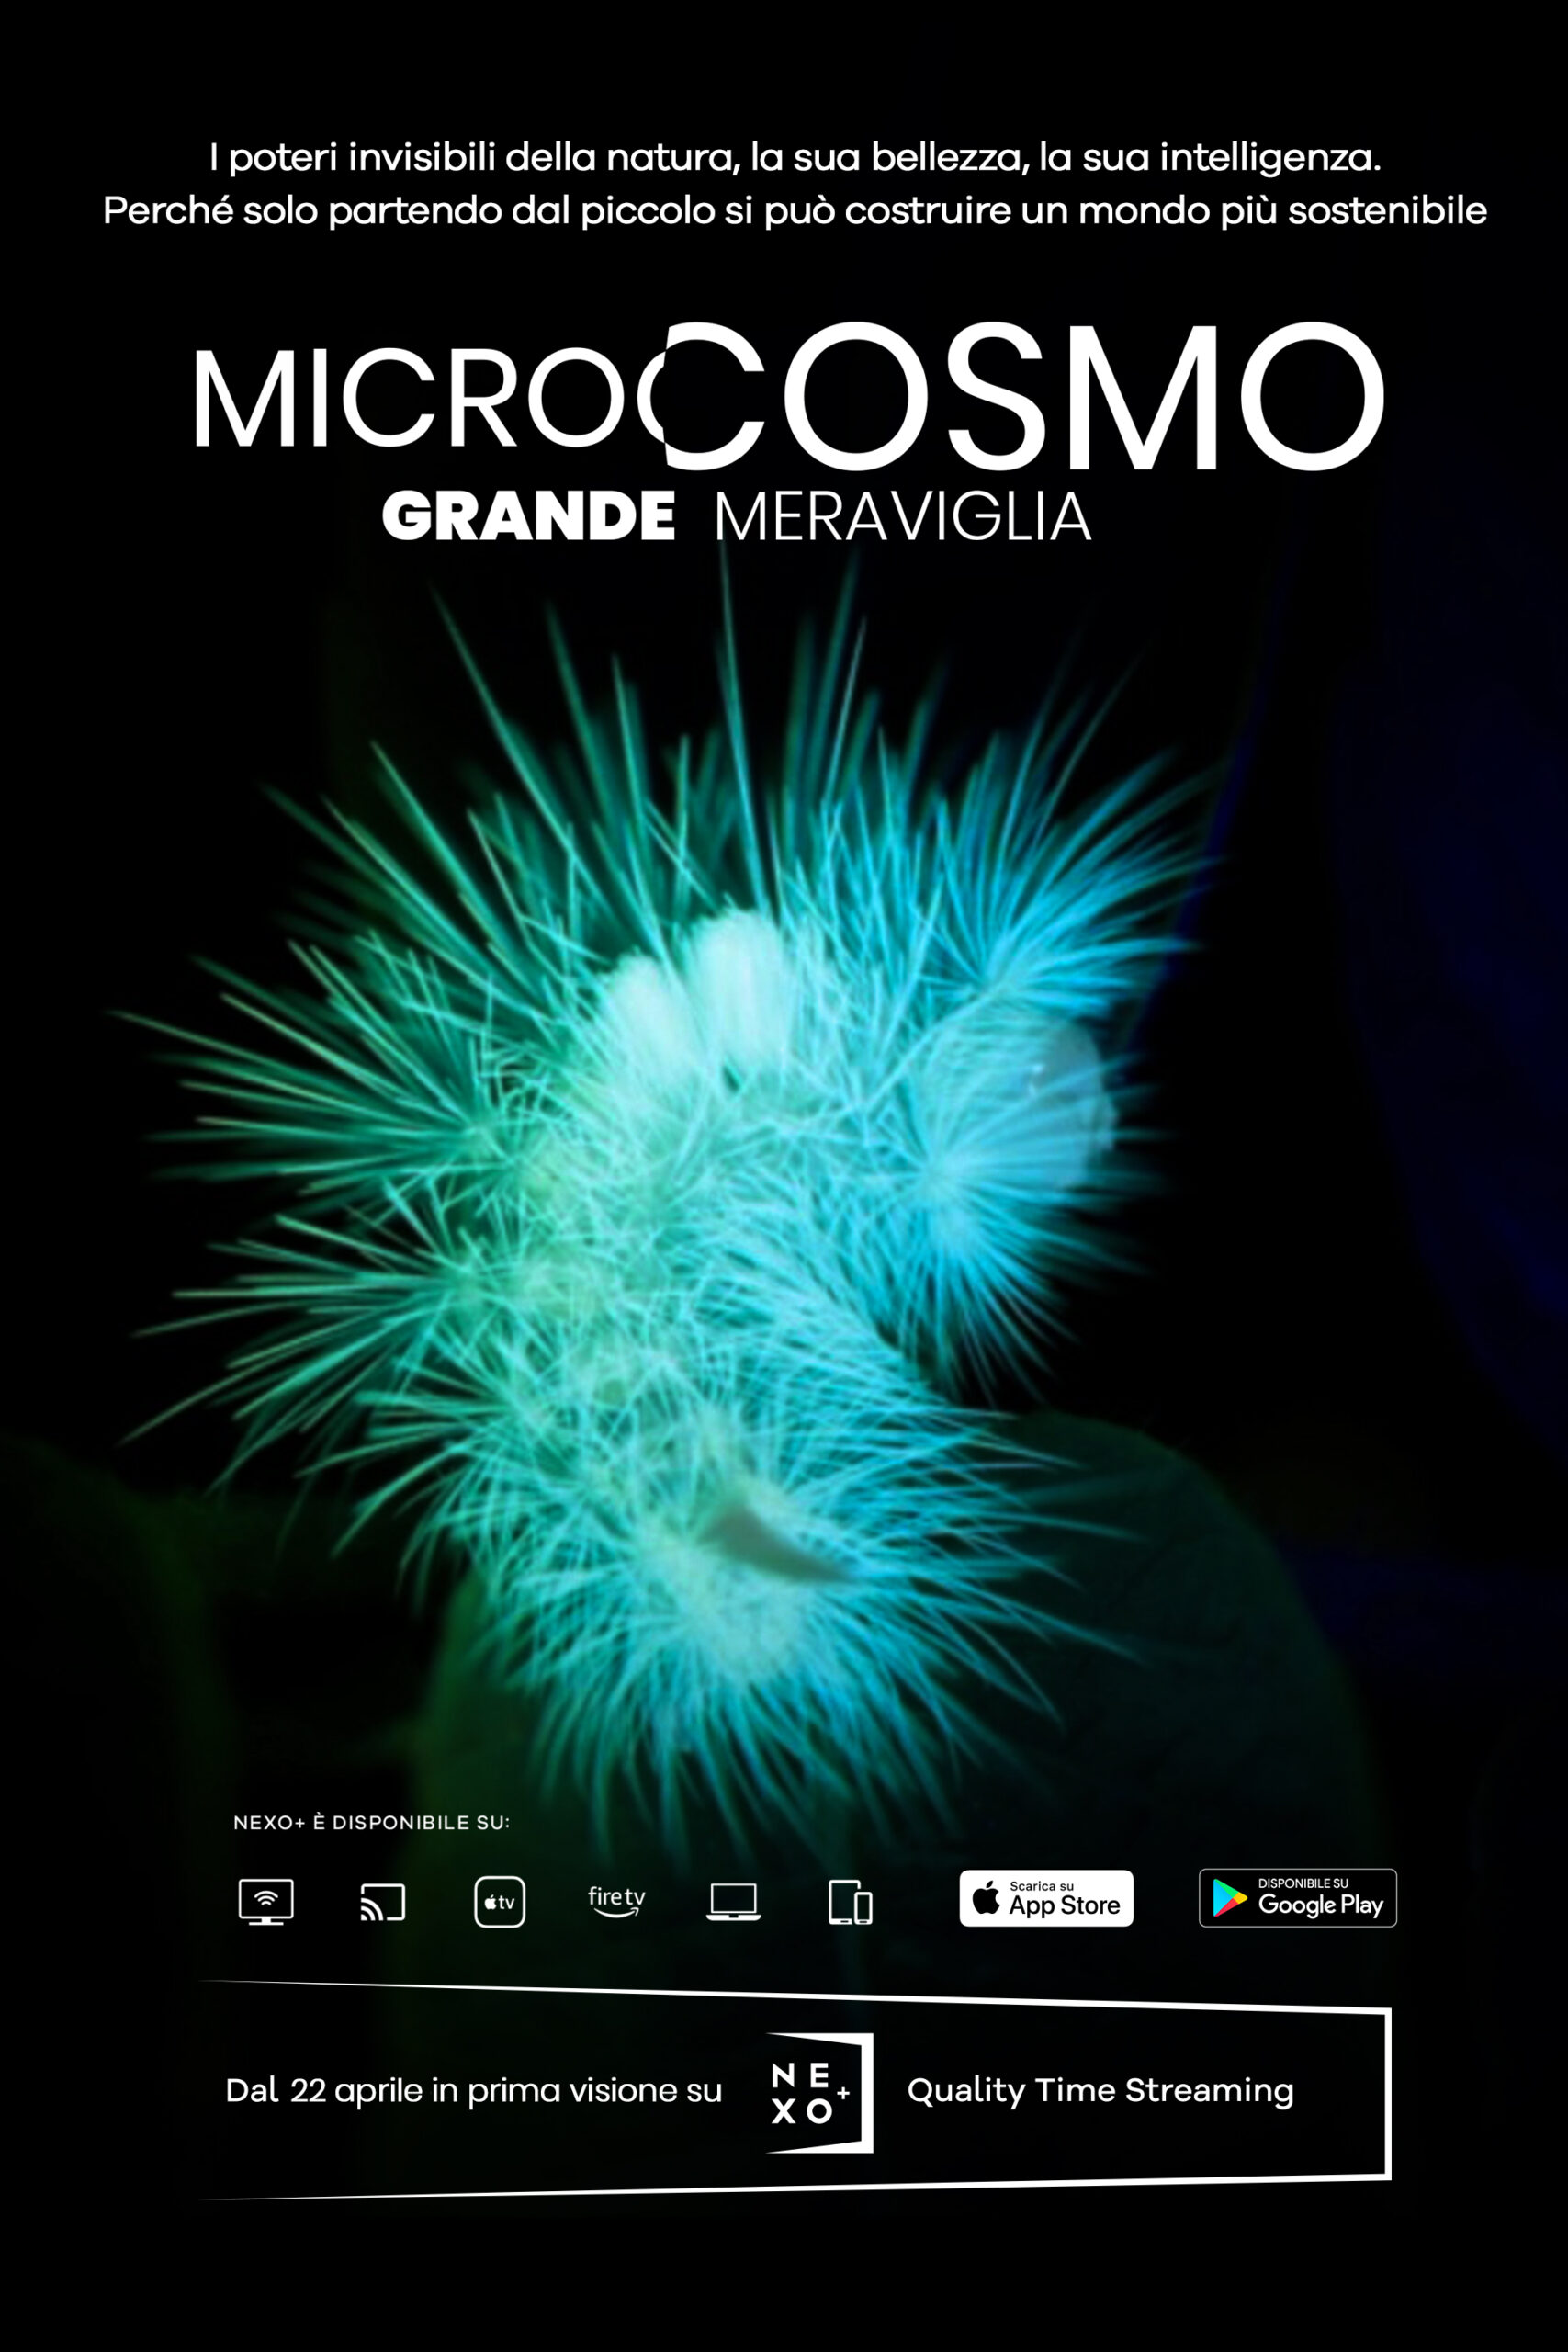 Microcosmo-Grande Meraviglia, Film 2020